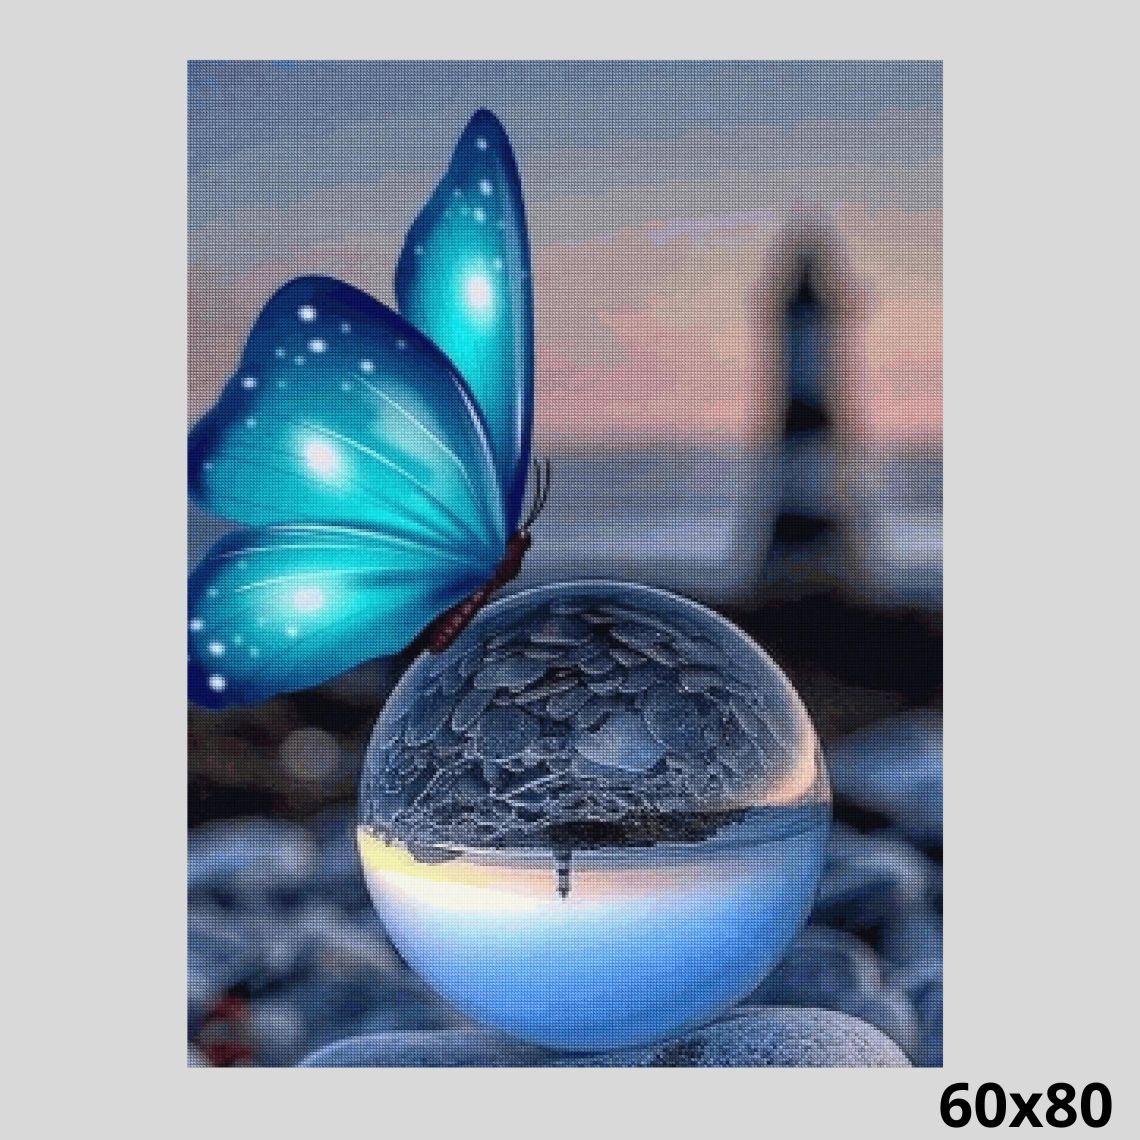 Butterfly on Glass Ball 60x80 - Diamond Art World